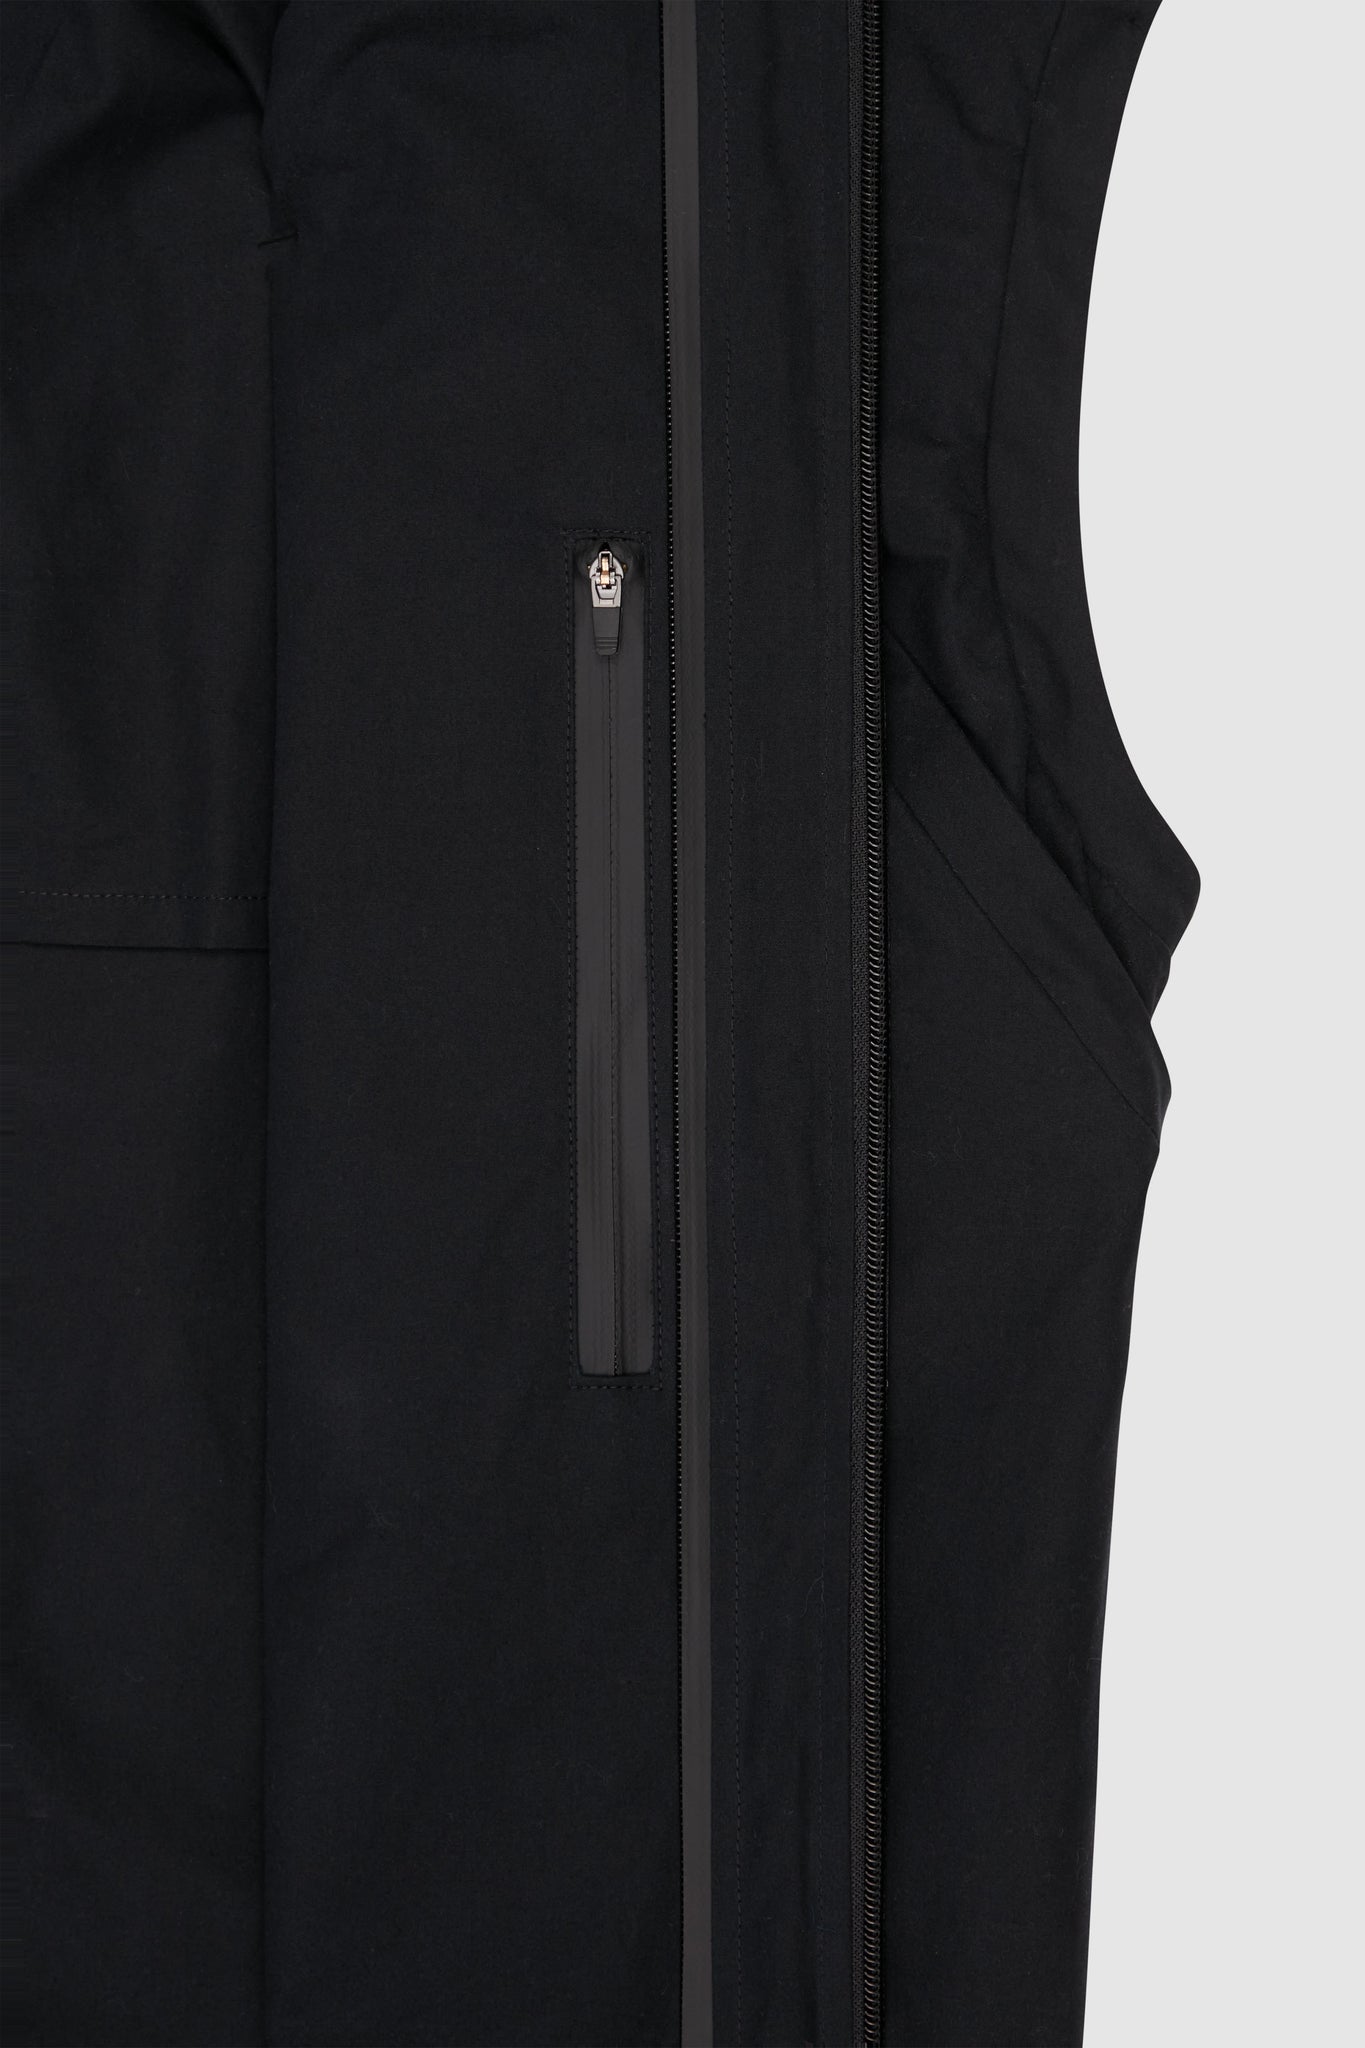 Zipper Detail inside facing